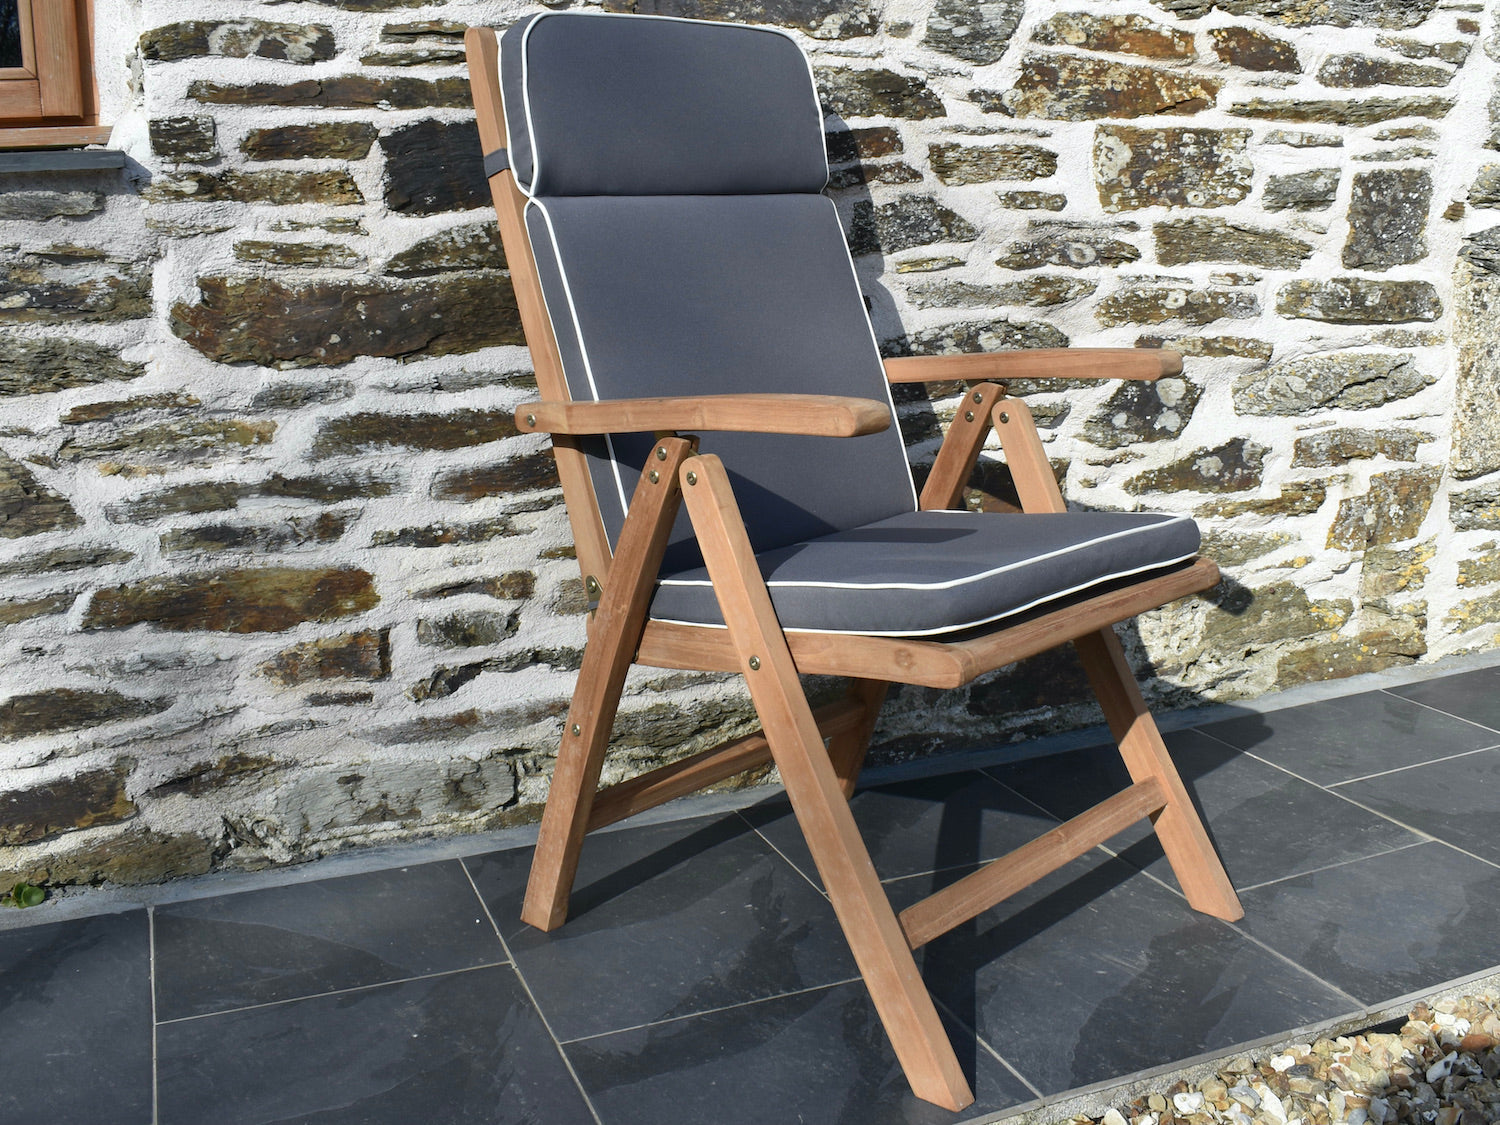 Grey colour outdoor cushion for a garden recliner chair